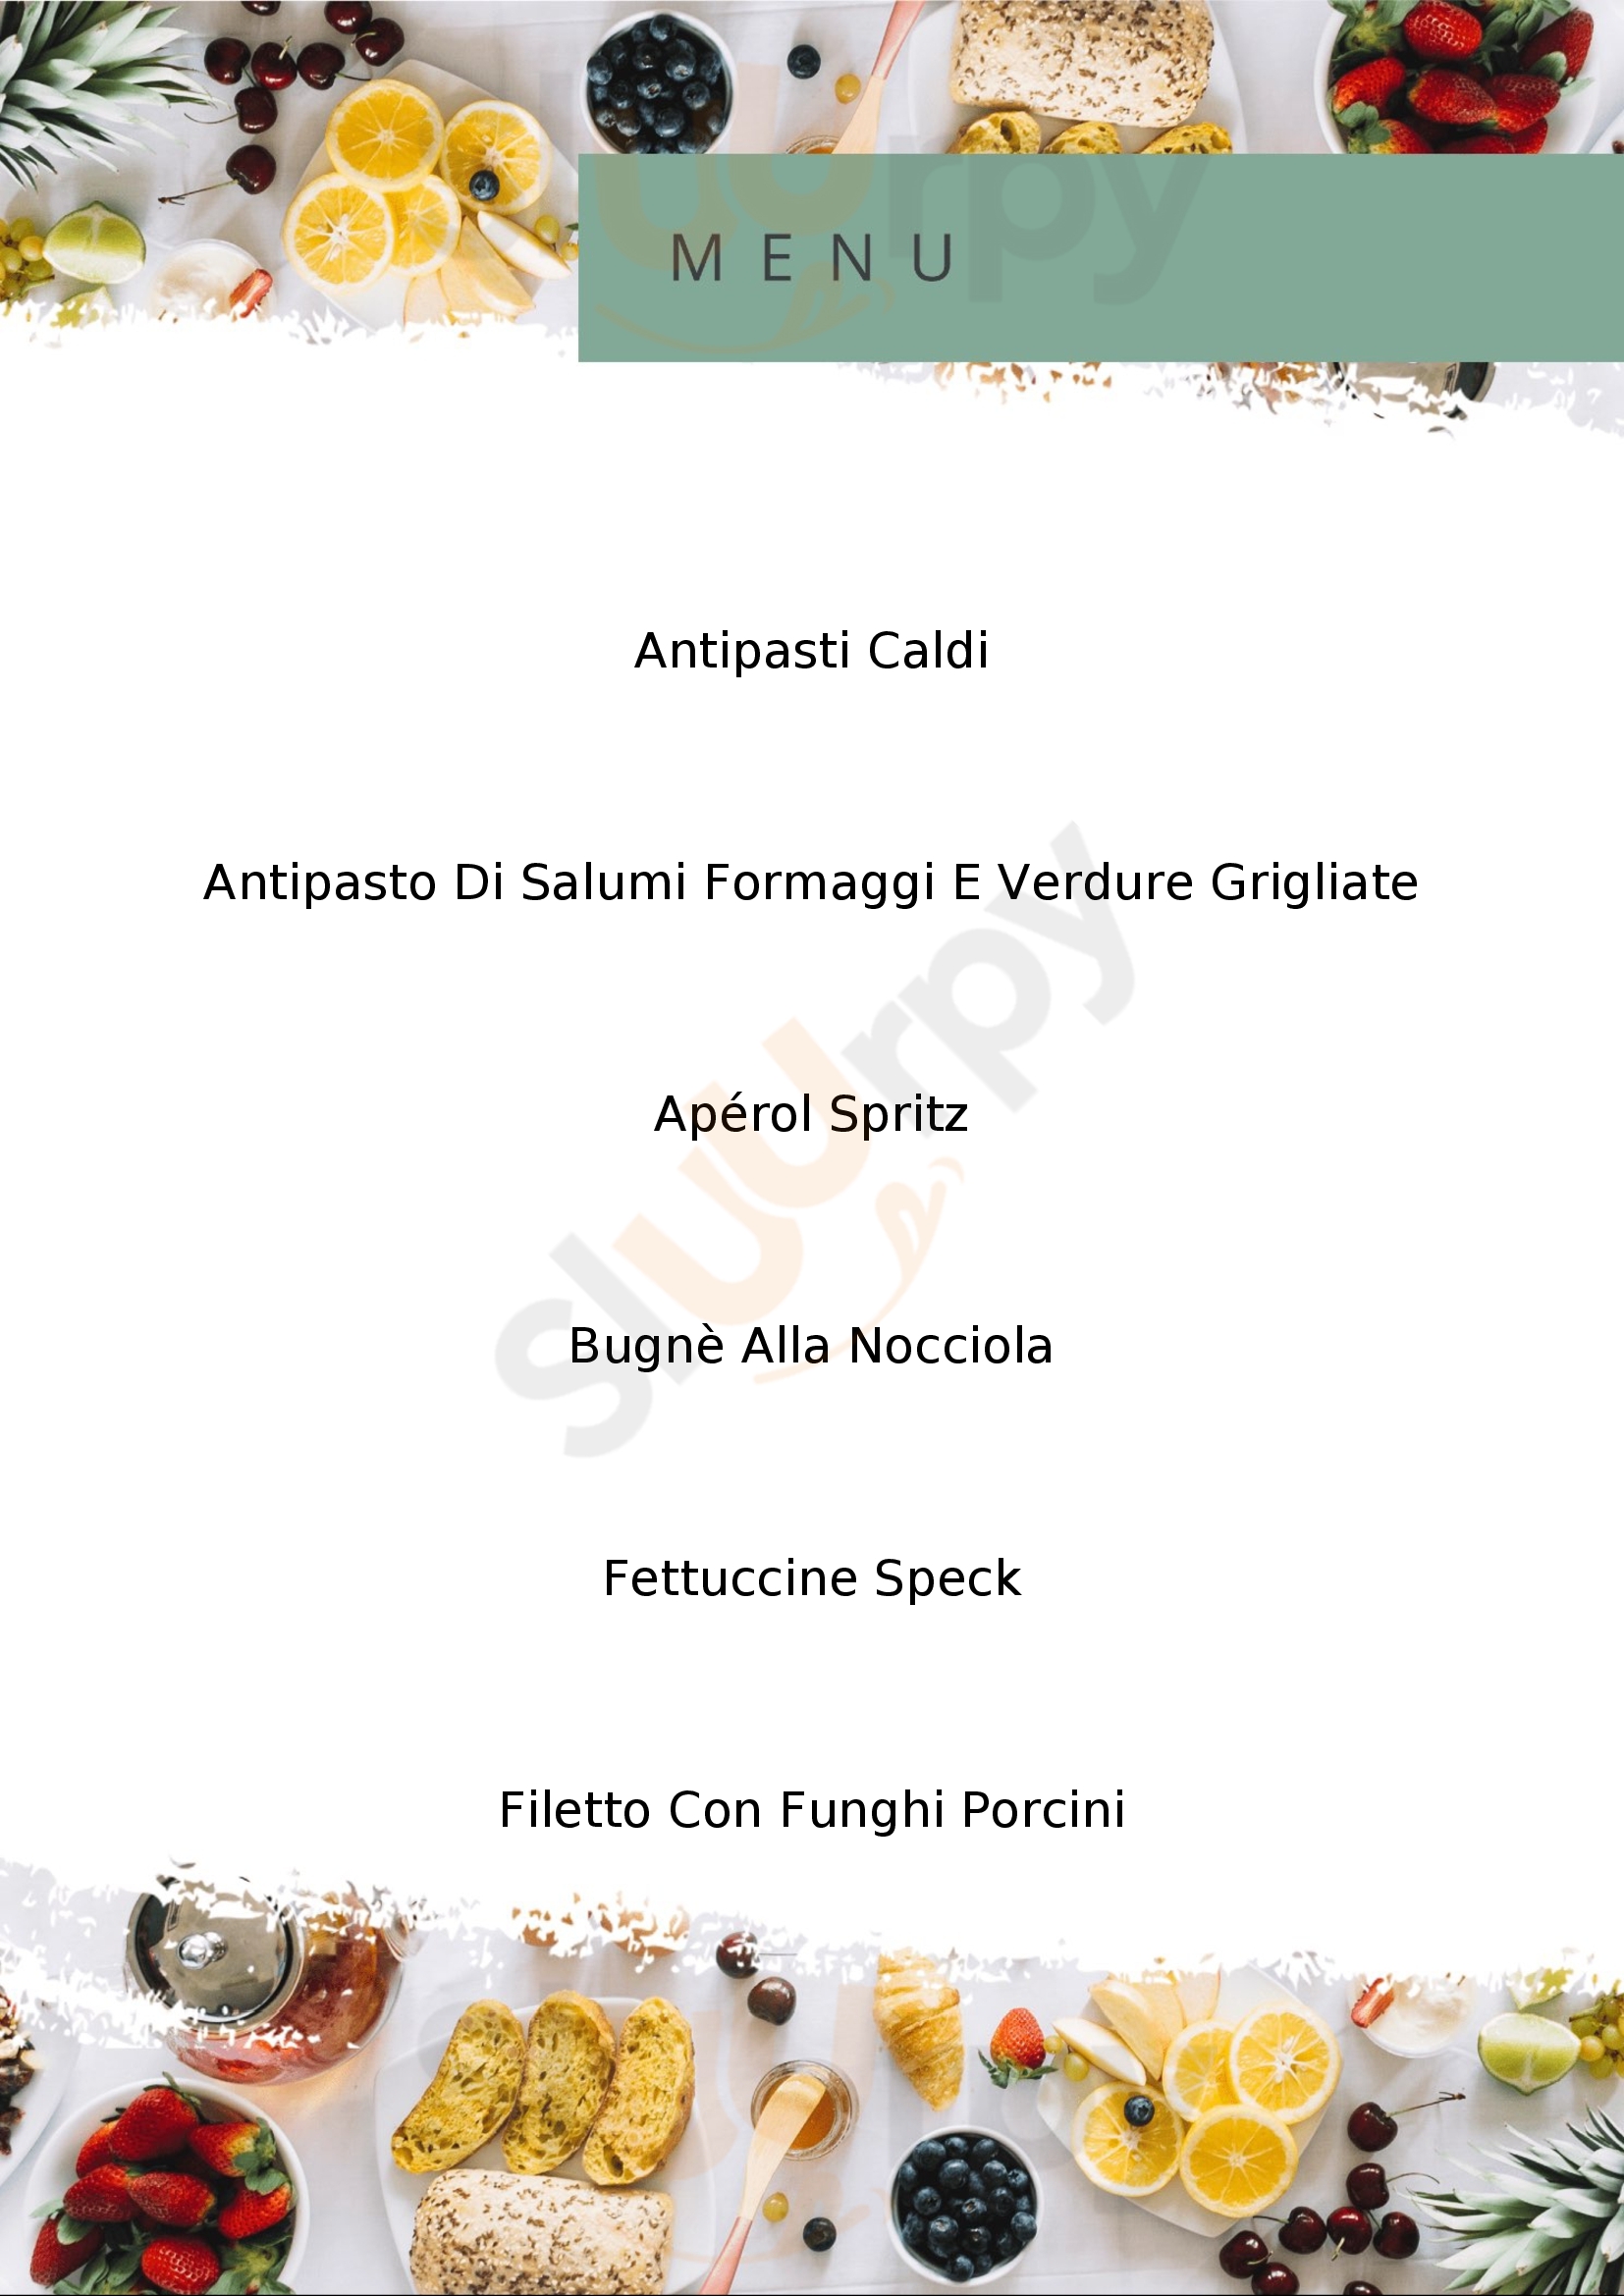 Osteria del Borgonovo Tagliacozzo menù 1 pagina